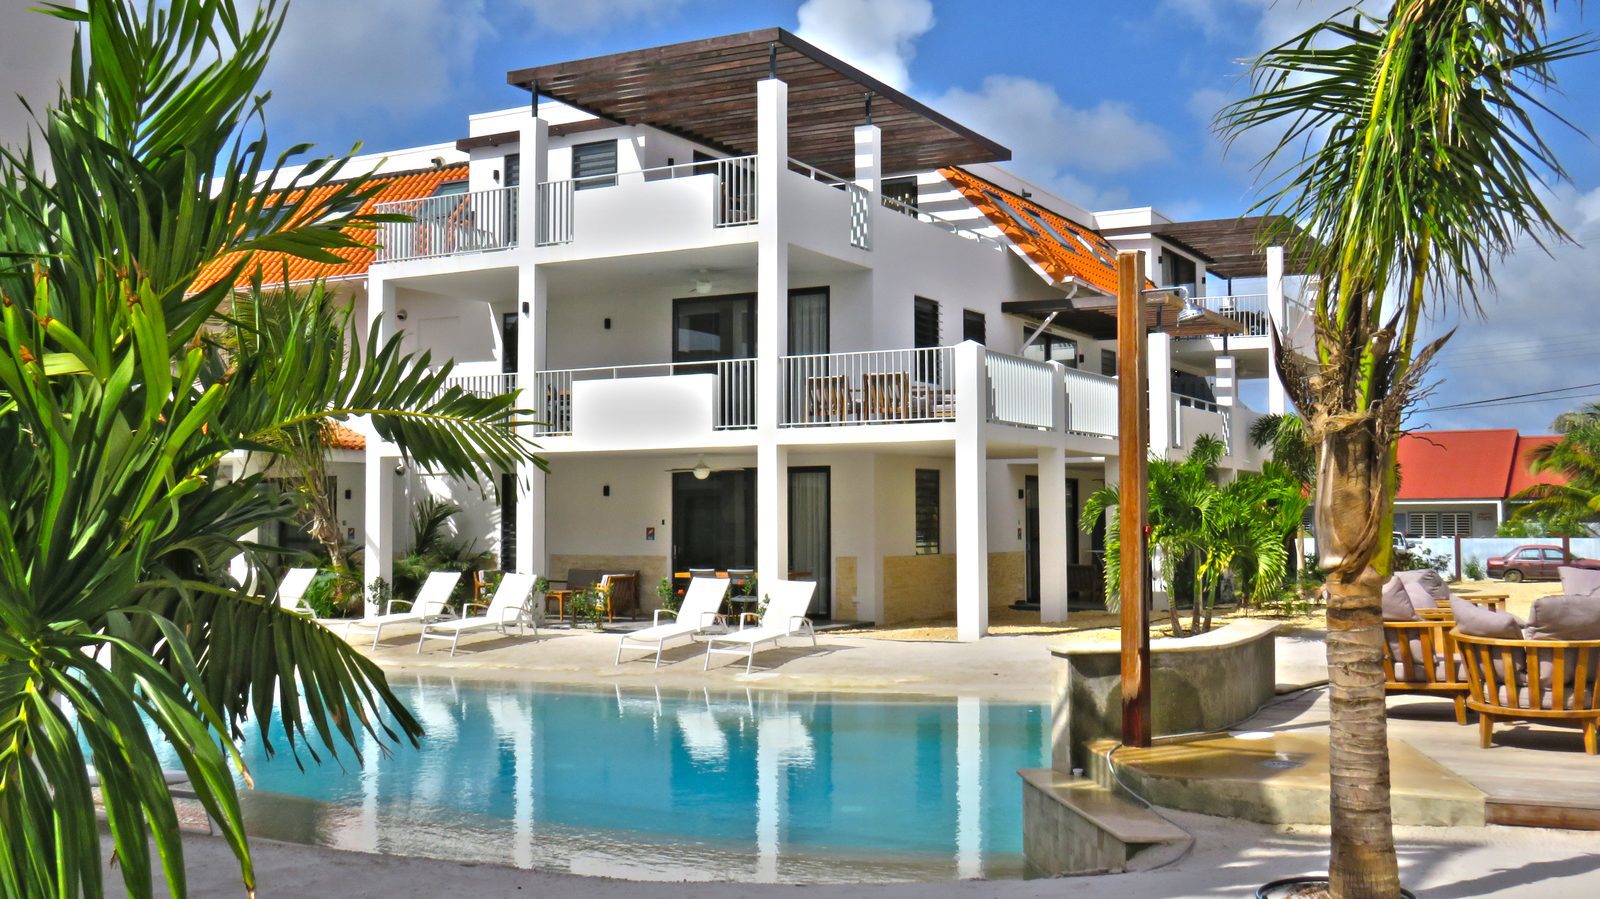 Séjourner à Bonaire ? C'est possible au Resort Bonaire ! Nous avons plusieurs appartements luxueux et dotés de tout ce dont vous avez besoin.